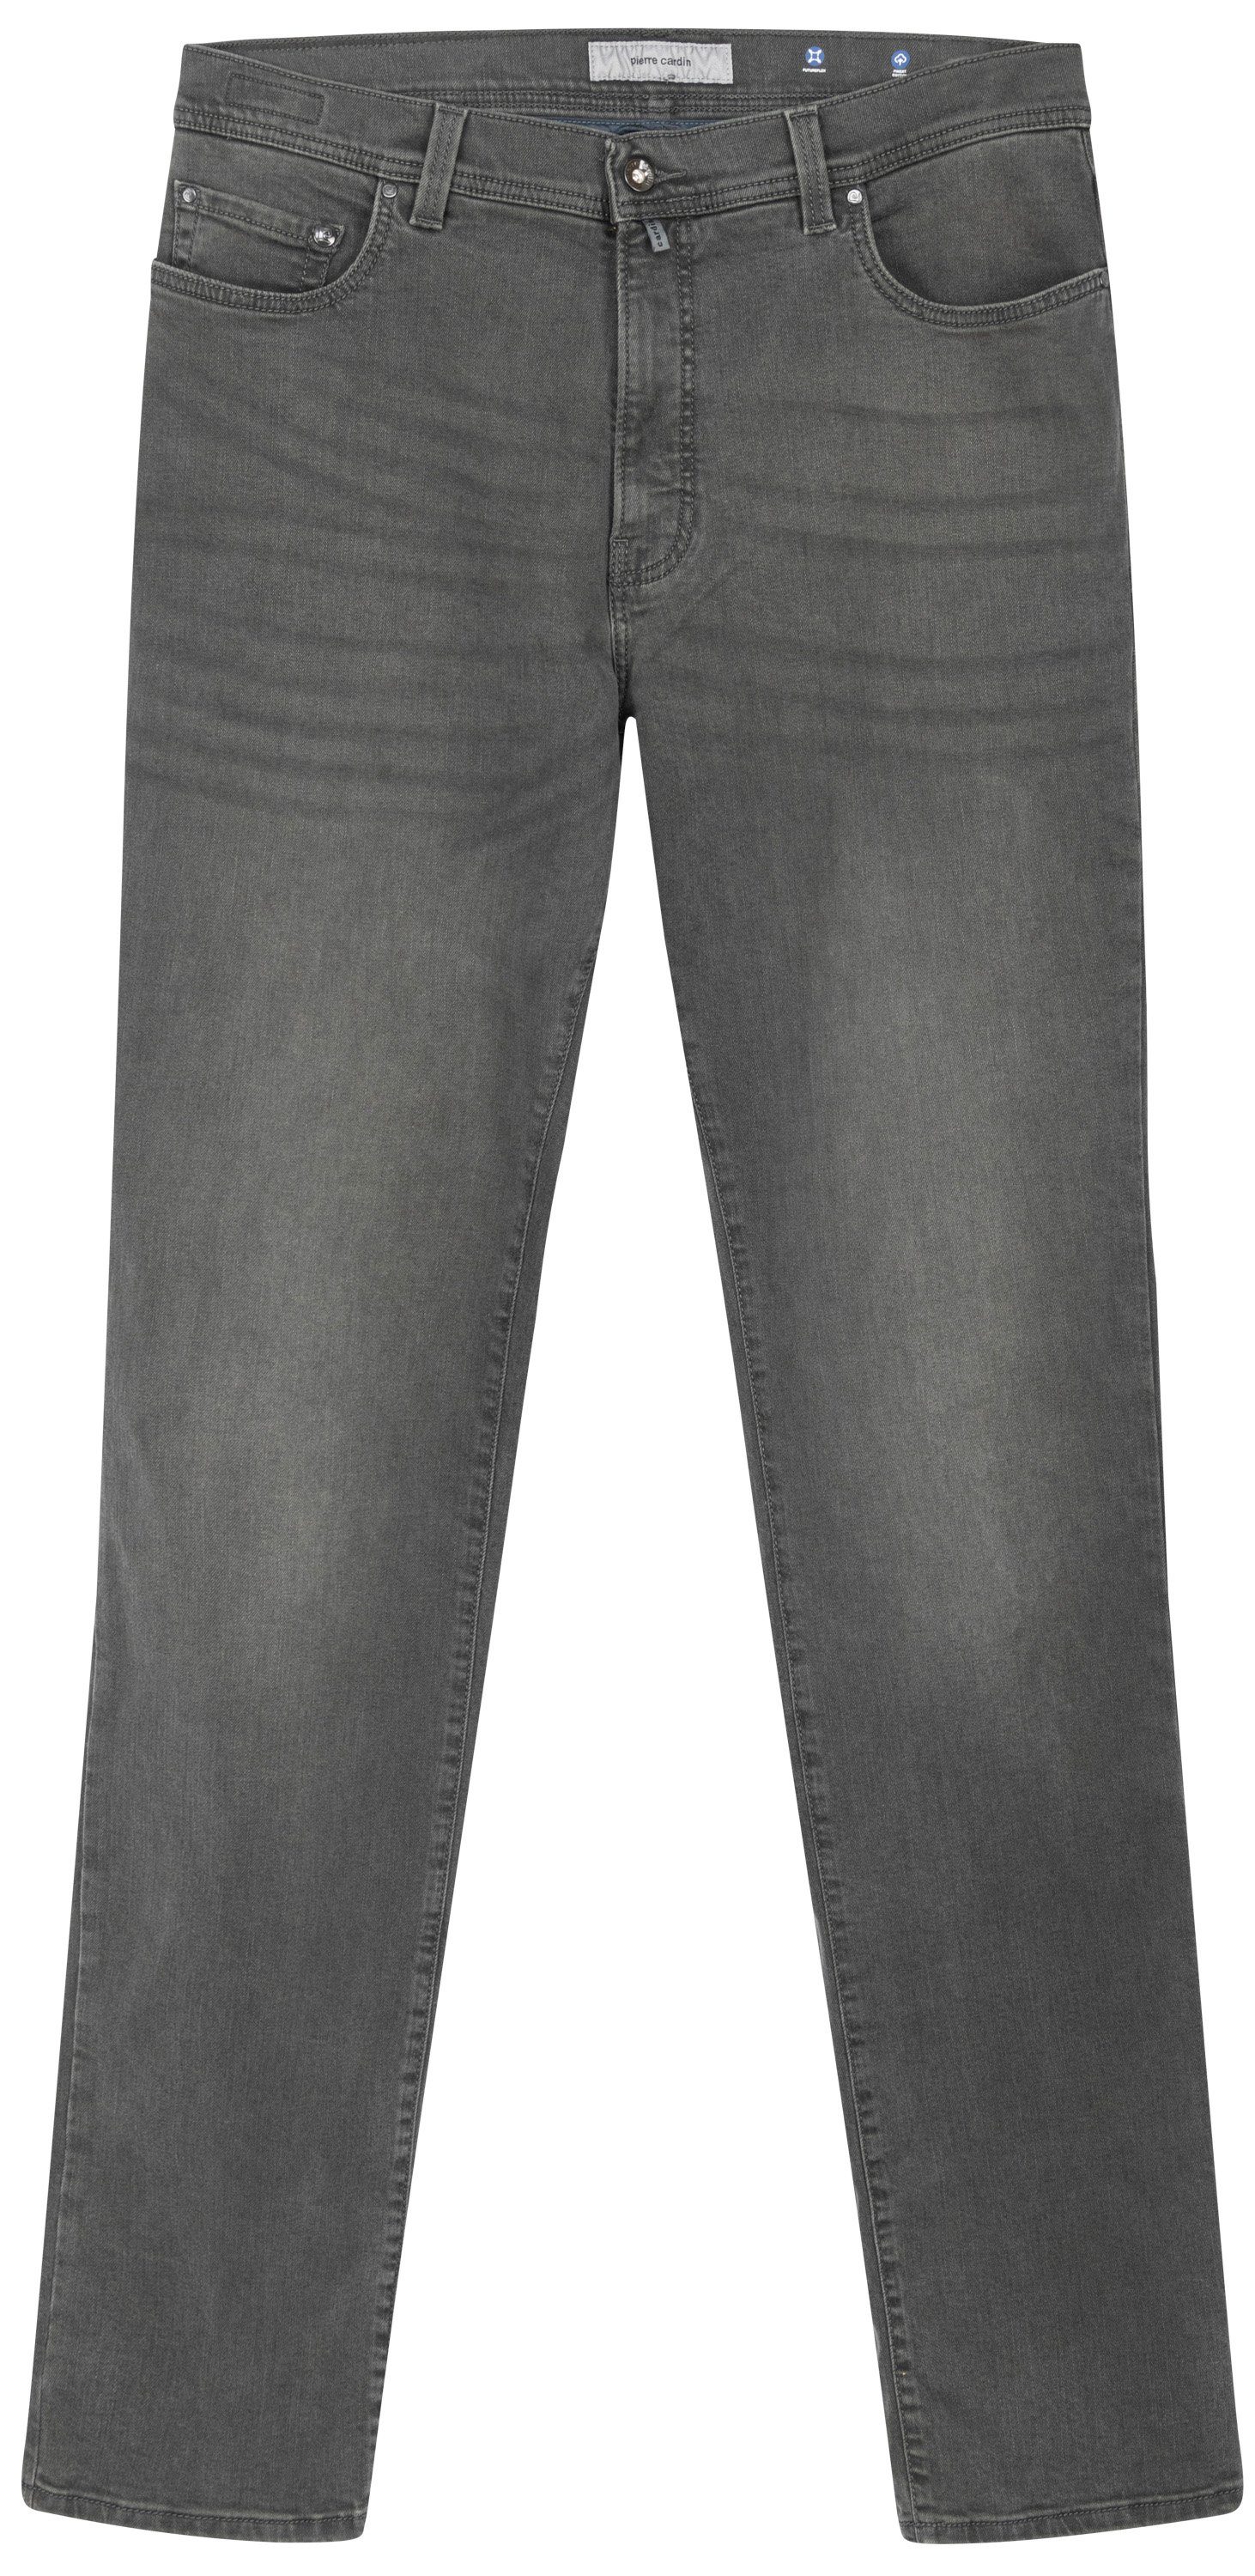 LYON TAPERED buffies 5-Pocket-Jeans Pierre dark grey 8103.5804 38510 Cardin used - CARDIN PIERRE